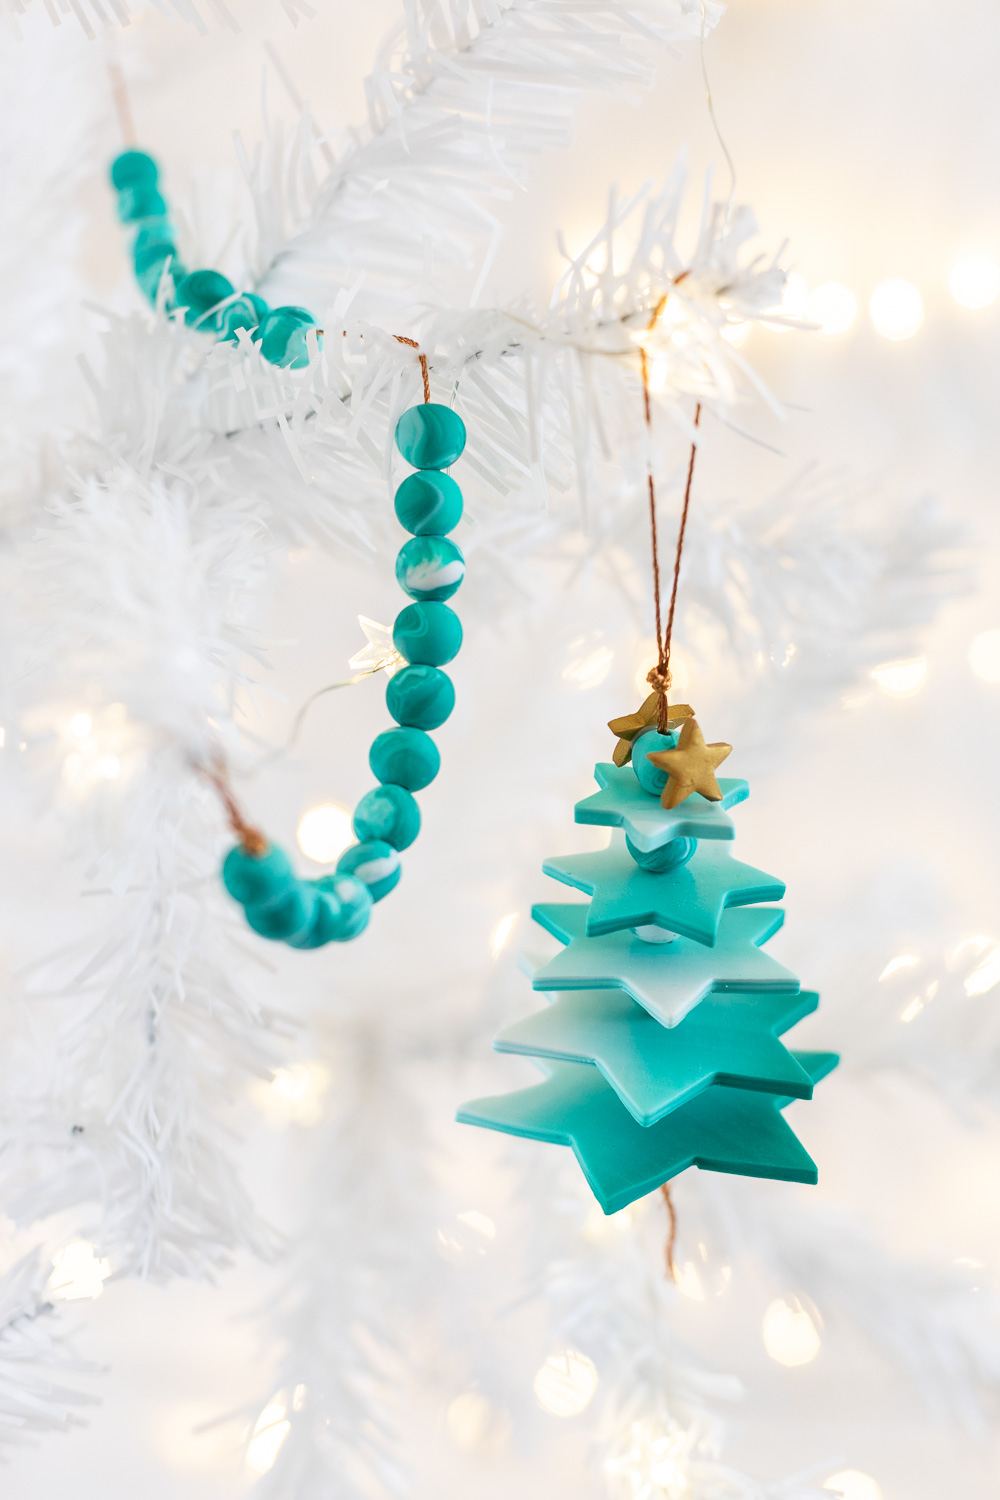 Kreativen DIY Baumschmuck selber machen: Dieses Tannenbaum Ornament aus Fimo Sternen mit wunderschönem Farbverlauf ist ein einzigartiger Christbaumschmuck. Das DIY Projekt eignet sich perfekt zum Weihnachtsdeko Basteln mit Kindern: die Schritt für Schritt Anleitung findest du auf dem MrsBerry.de Blog